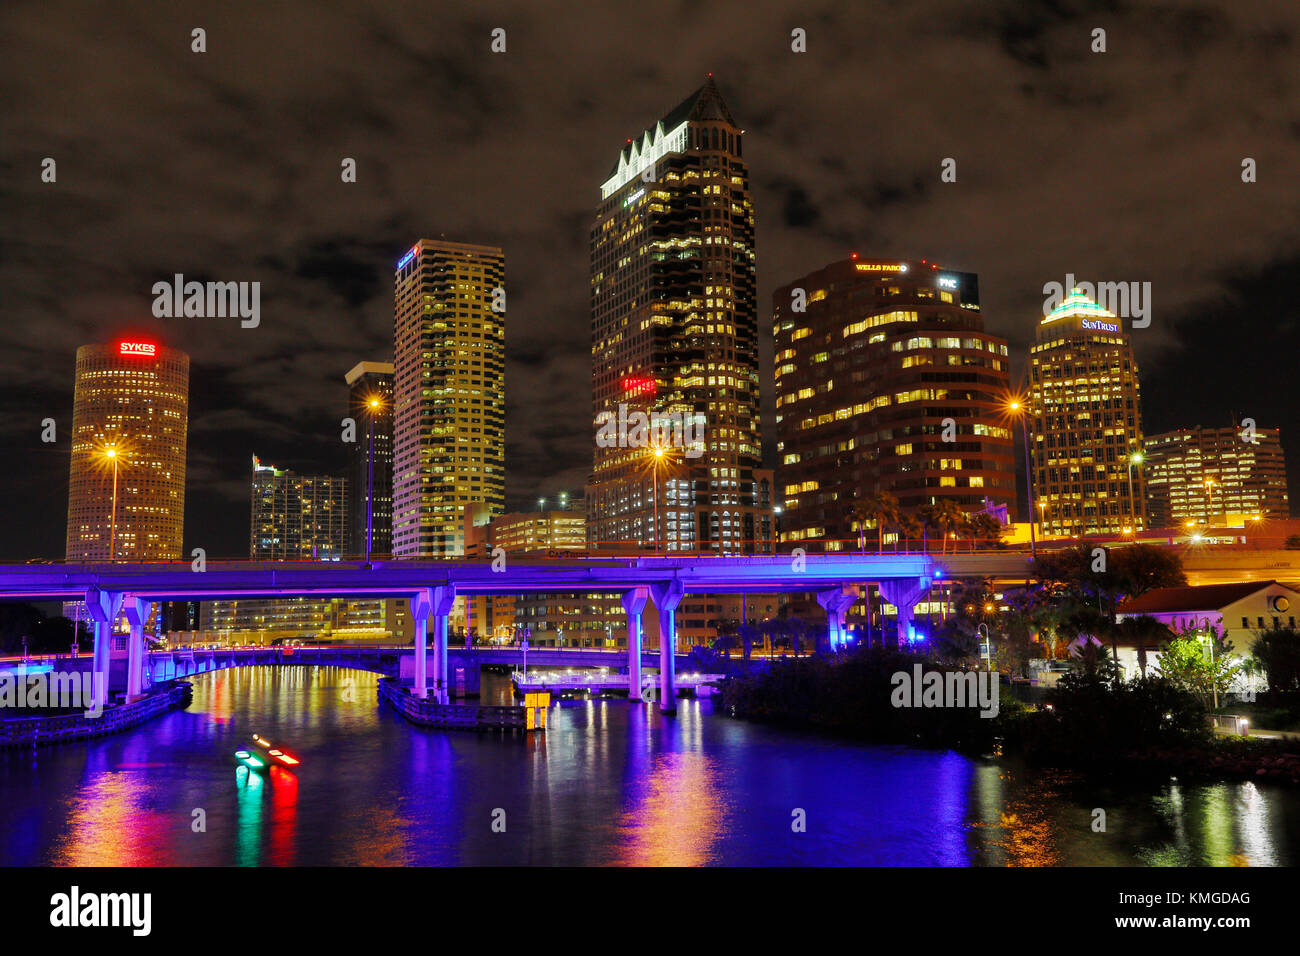 Januar 25, 2017: Die Skyline von Tampa, Florida in der Nacht beleuchtet. Stockfoto